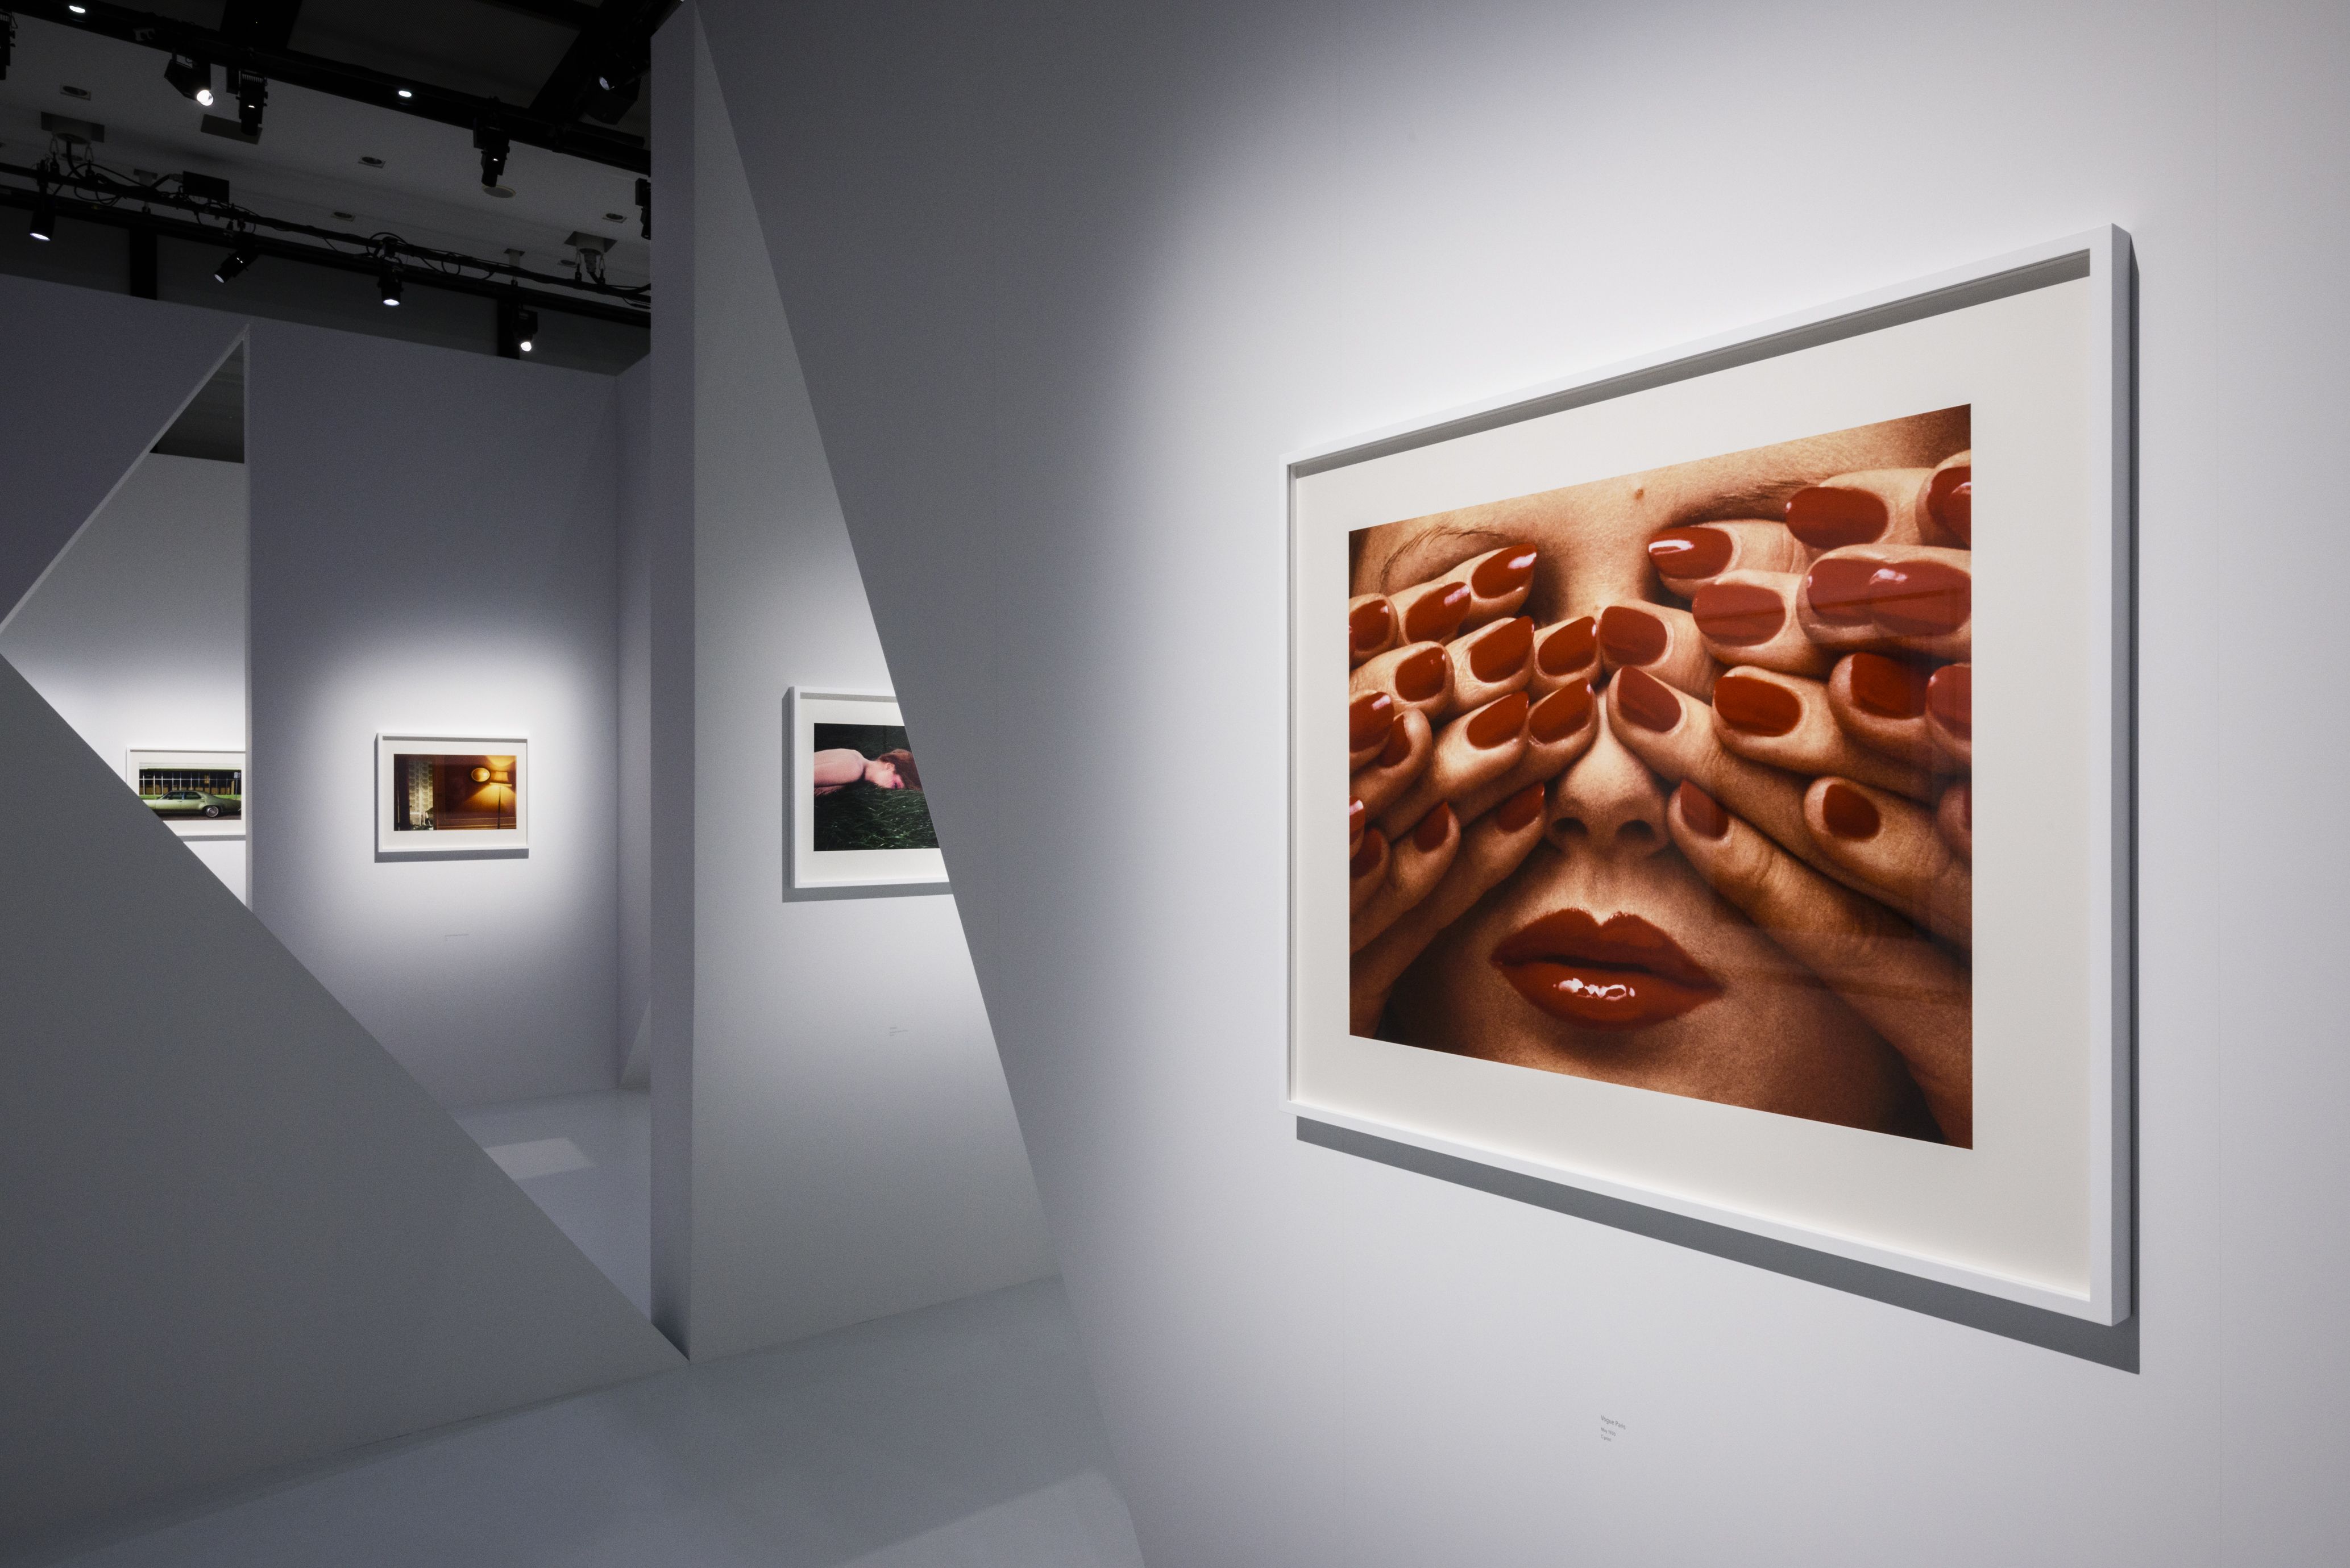 シャネルが写真家ギイ・ブルダンの展覧会を開催 初期の作品も公開 